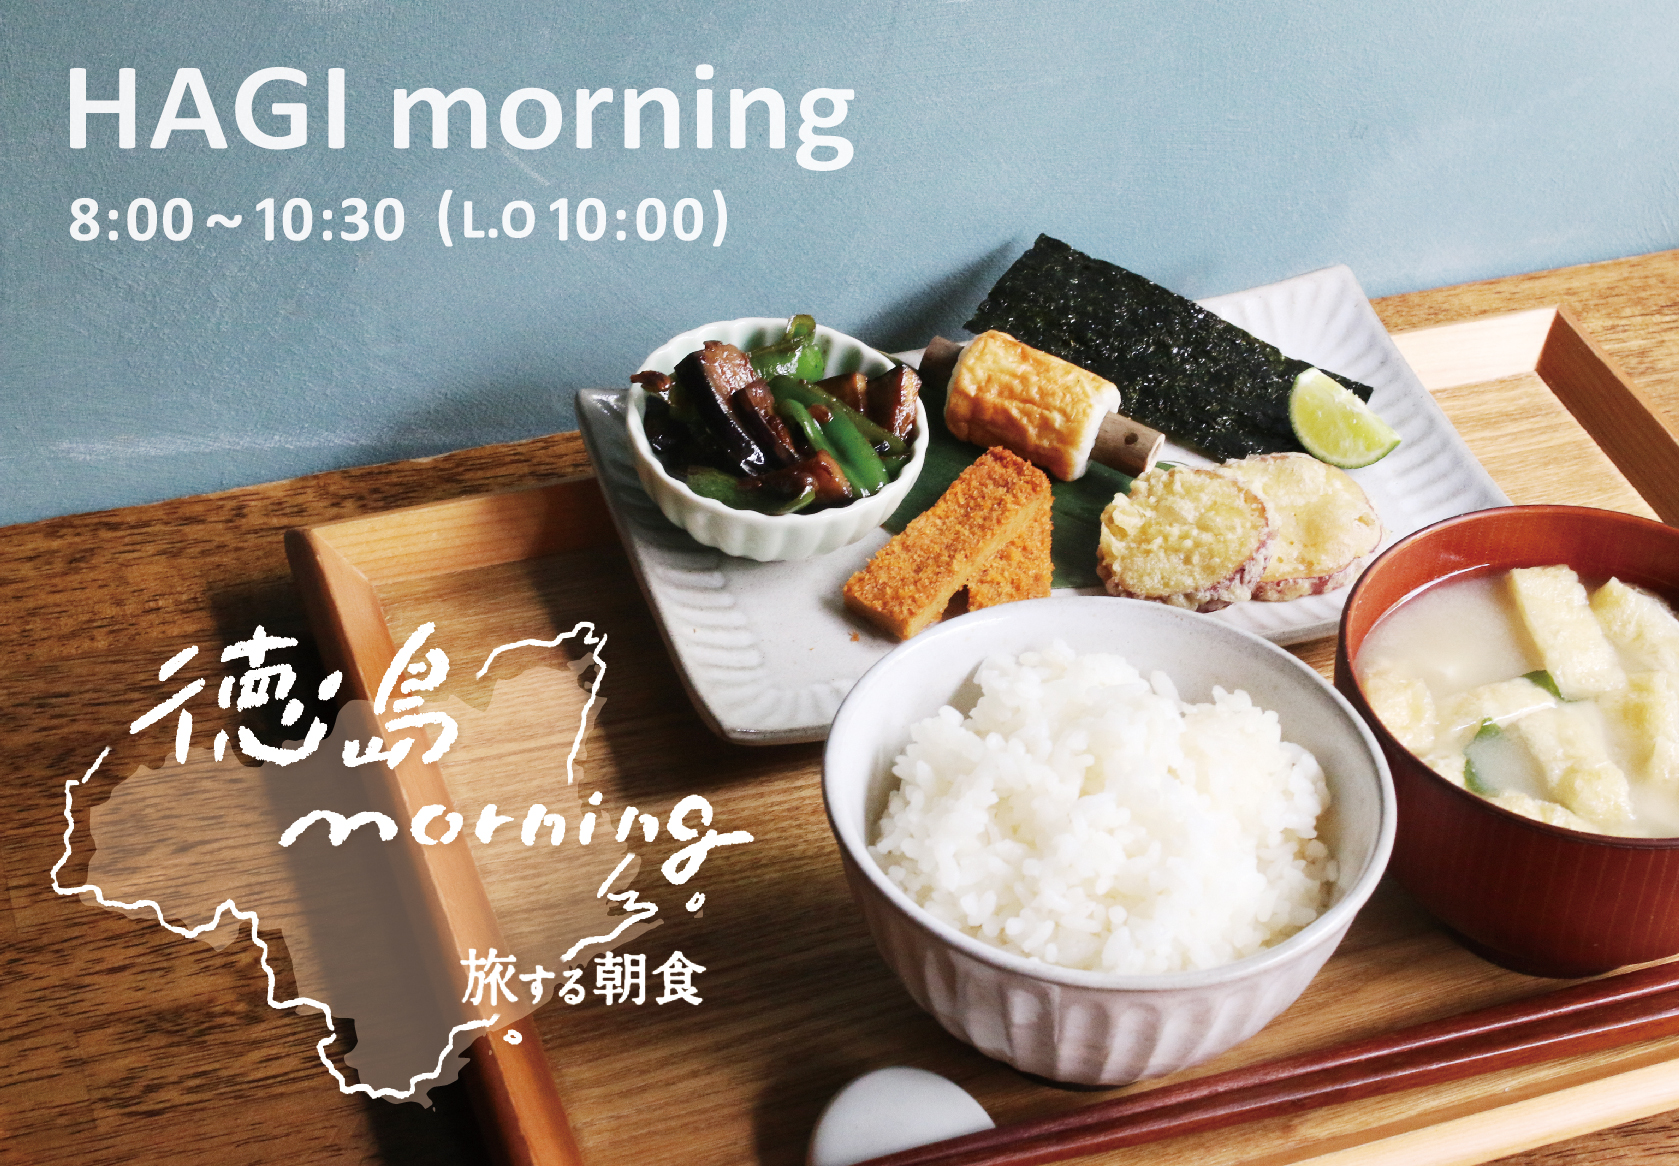 Hagiso 旅する朝食 徳島 Morning Hagi Morning 価格改定のお知らせ